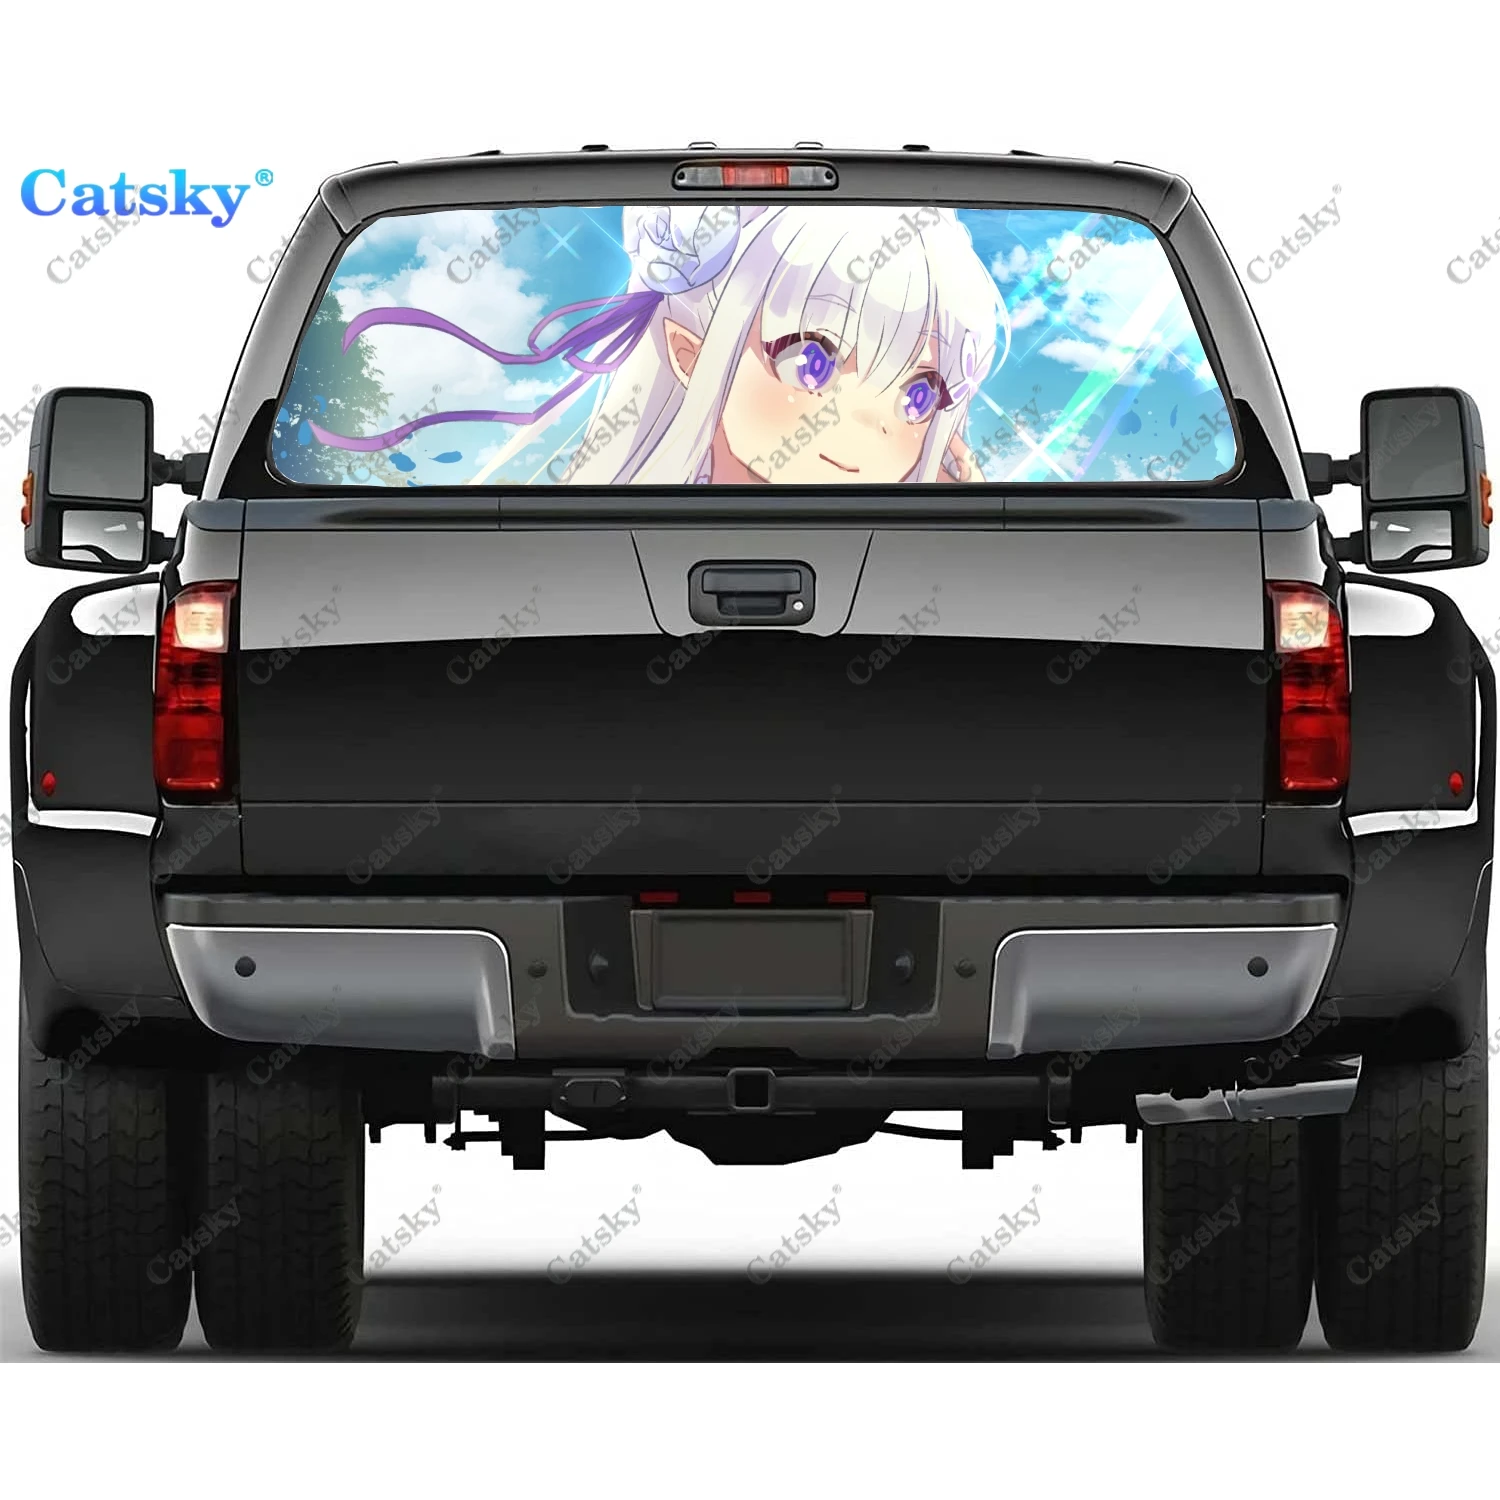 

Аниме Re ZERO милые наклейки на заднее стекло для девочек для грузовика, наклейка на окно пикапа, тинт для заднего стекла графическая перфорированная виниловая наклейка для грузовика